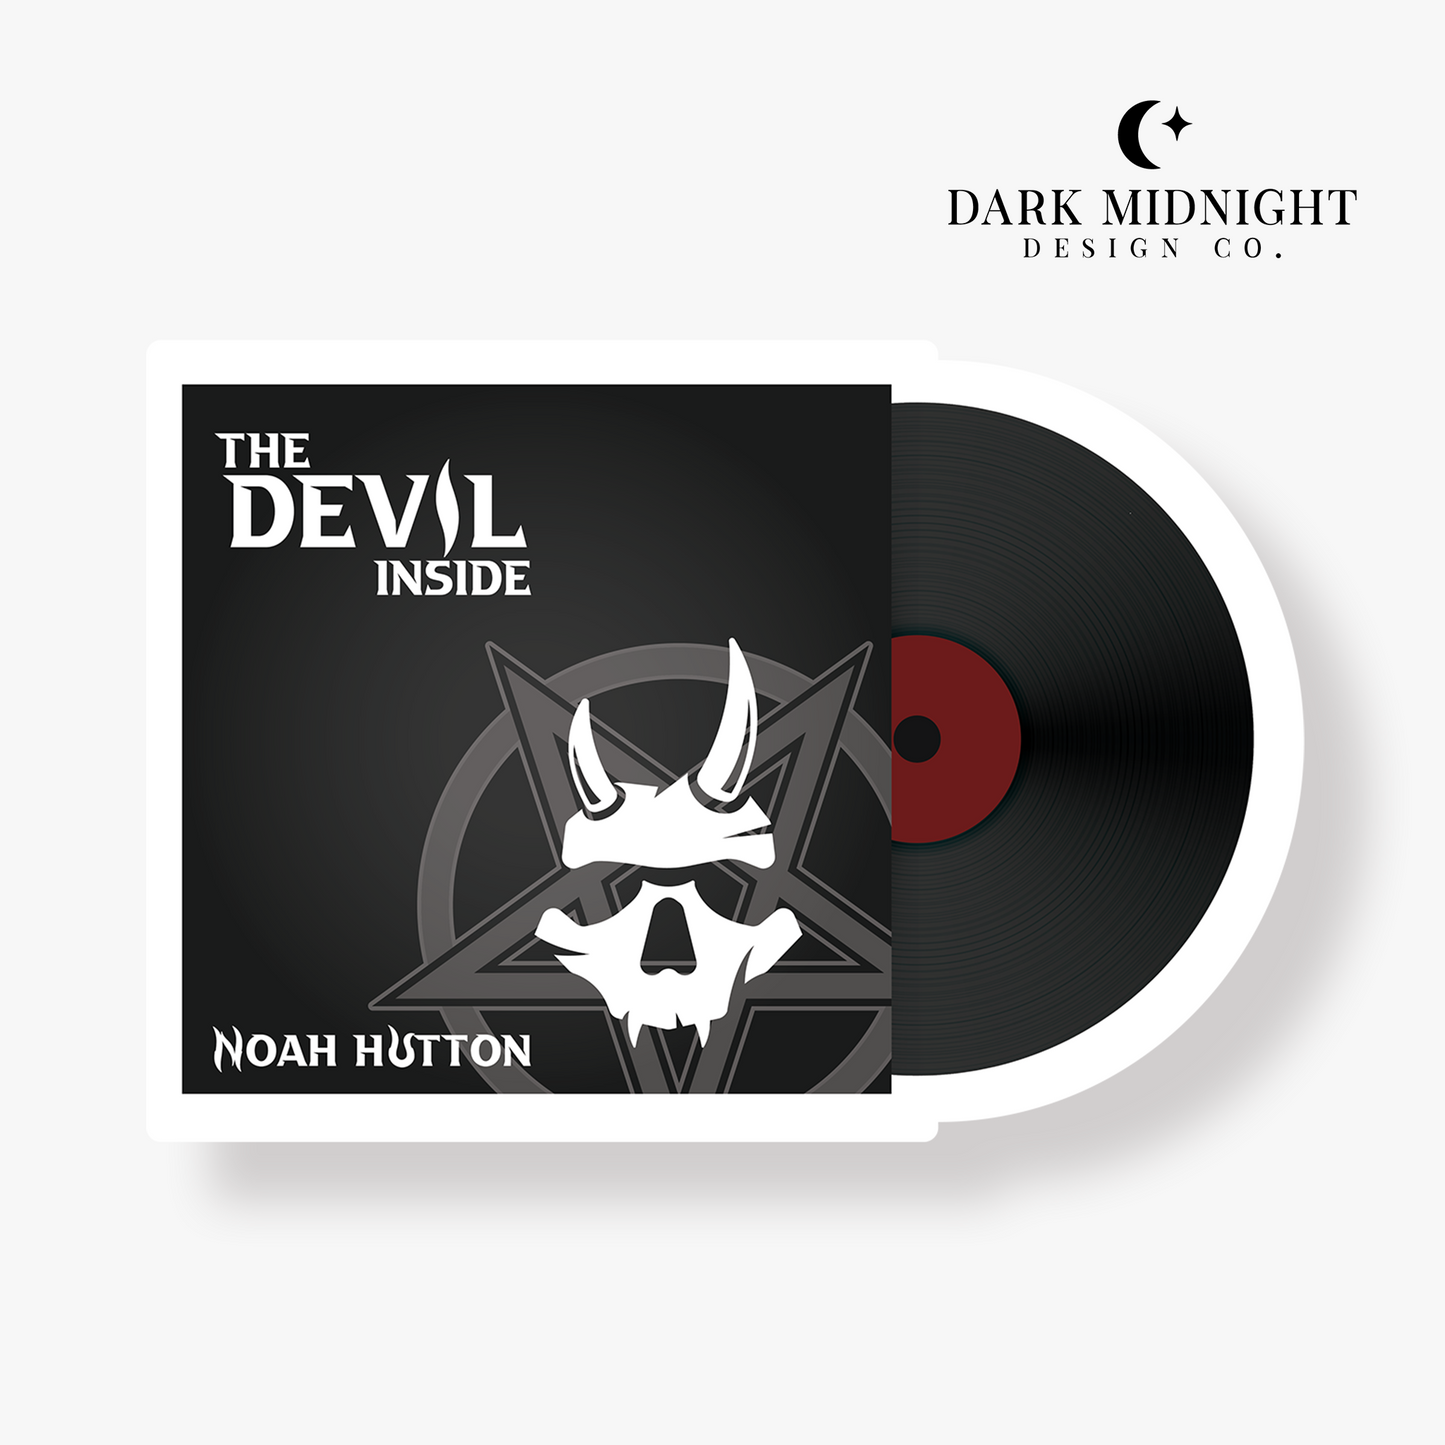 The Devil Inside Vinyl Album Sticker - Officially Licensed Greatest Love Series